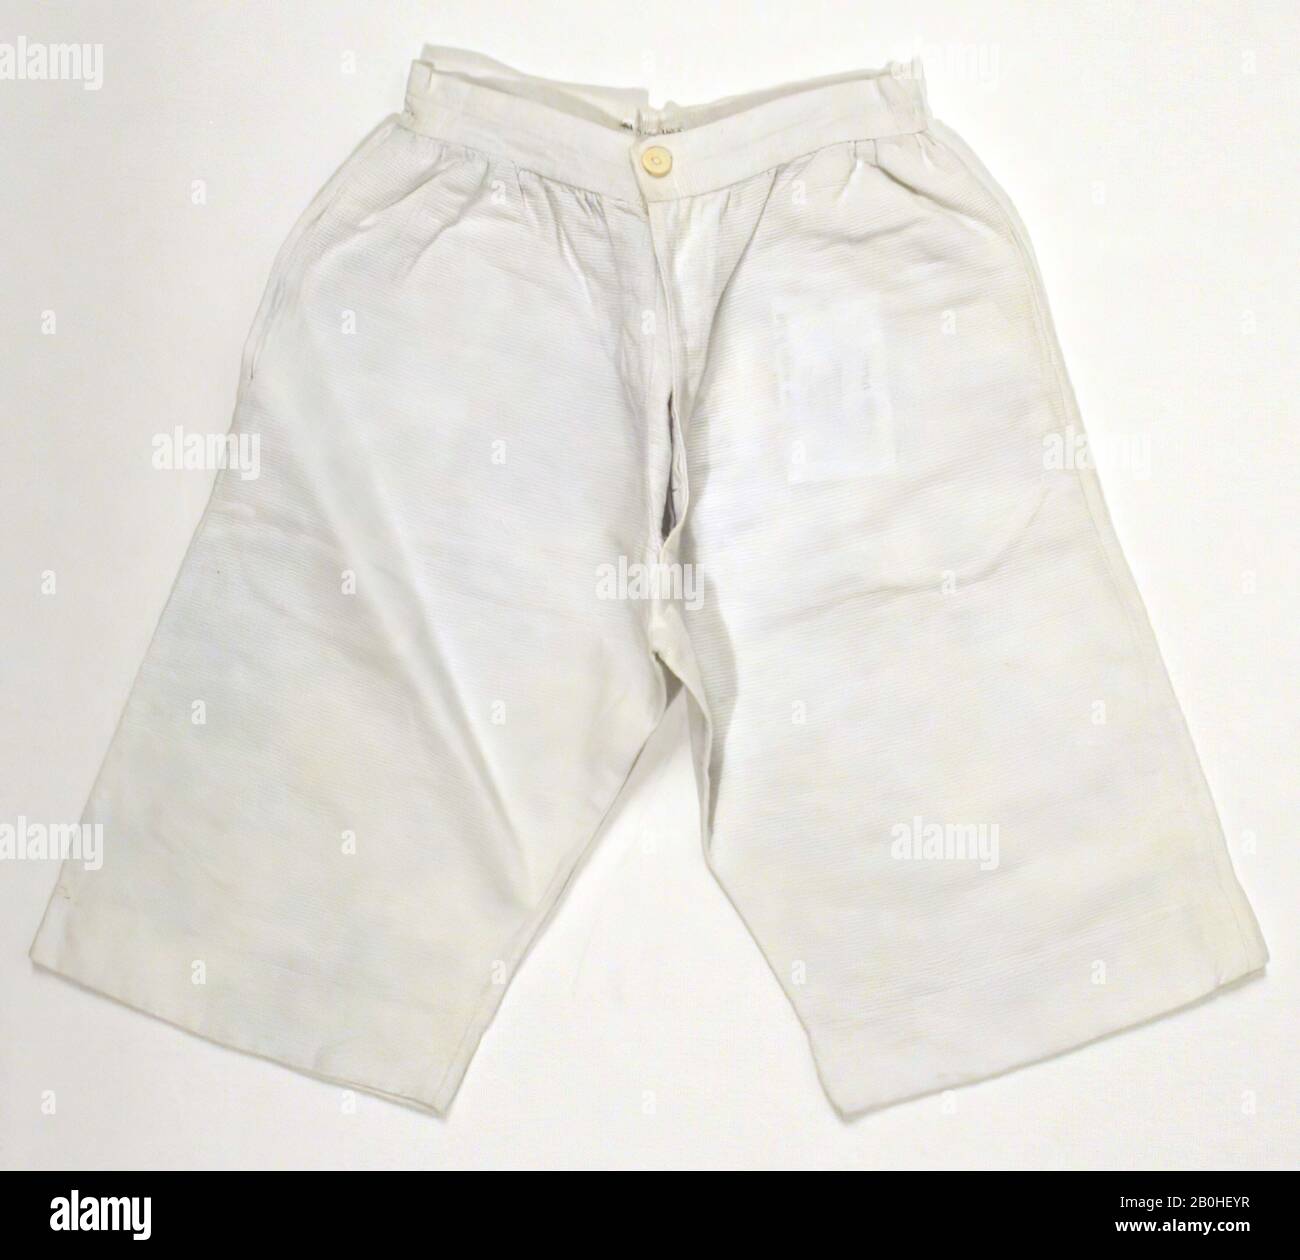 Pantalon, américain ou européen, 1840, américain ou européen, coton Banque D'Images